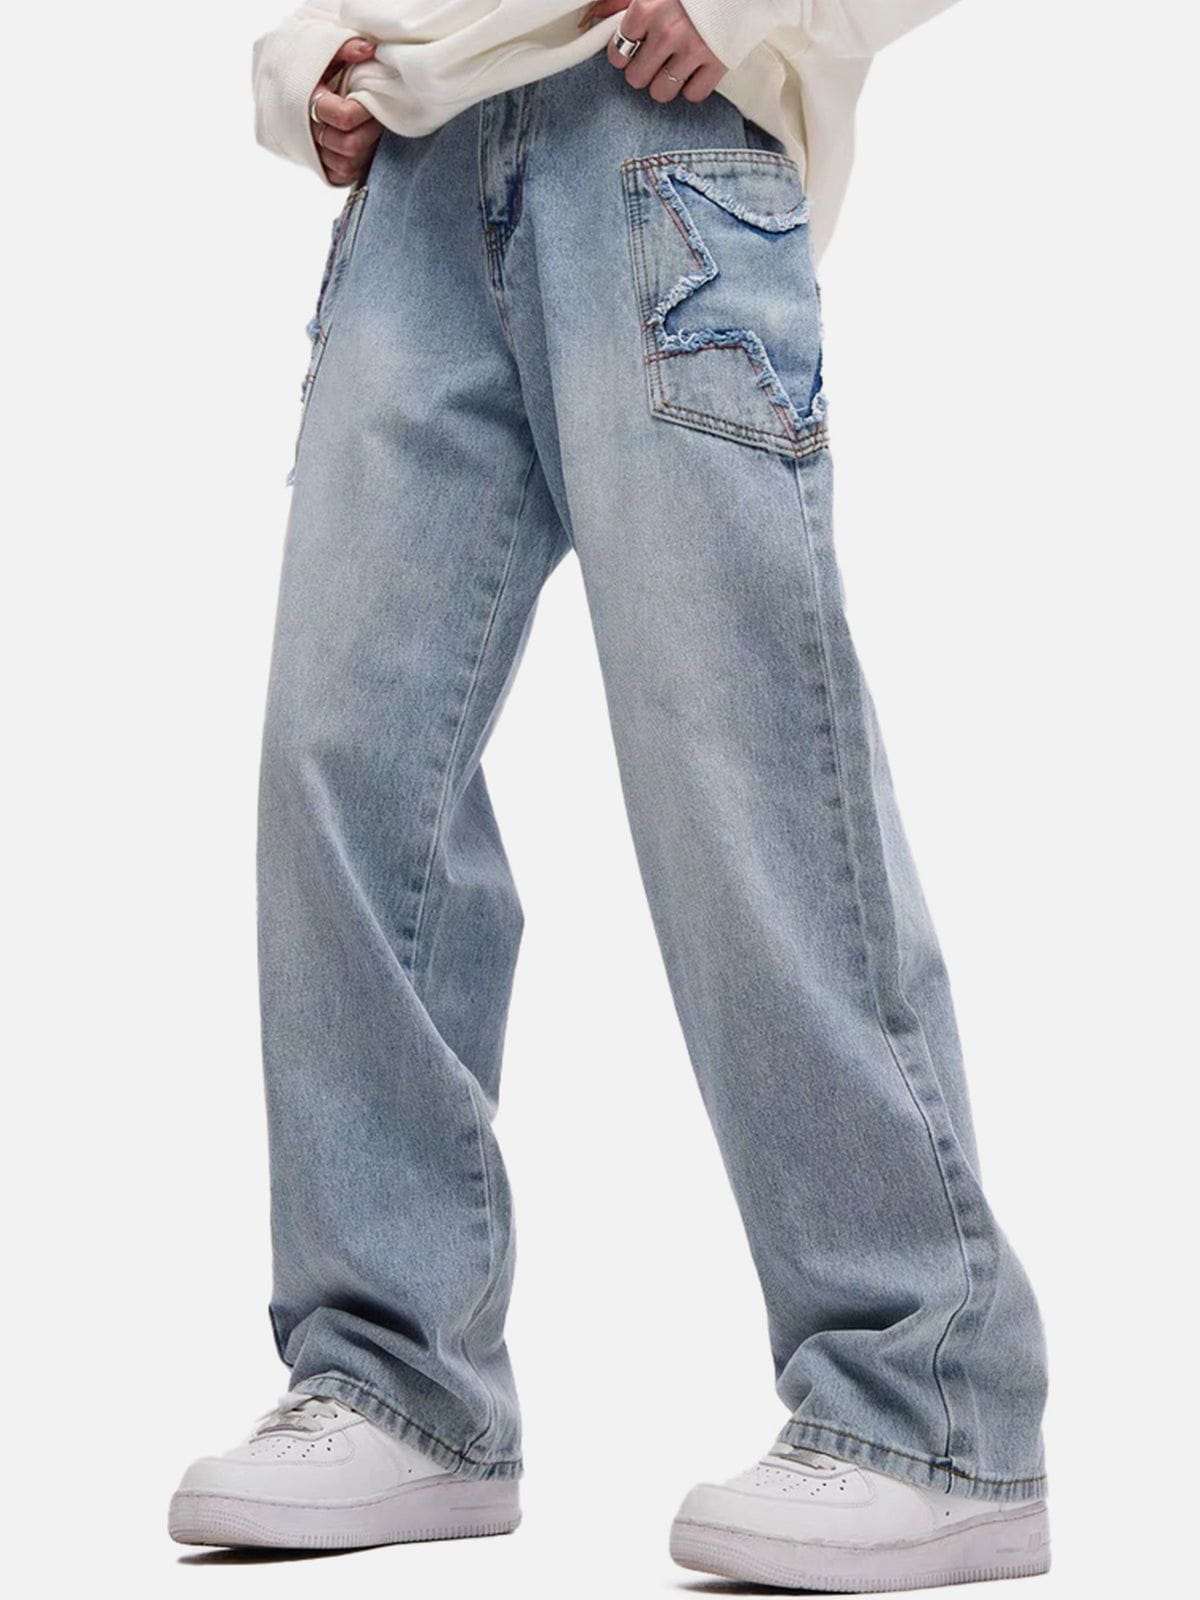 Eprezzy® - Stars Jeans Streetwear Fashion - eprezzy.com